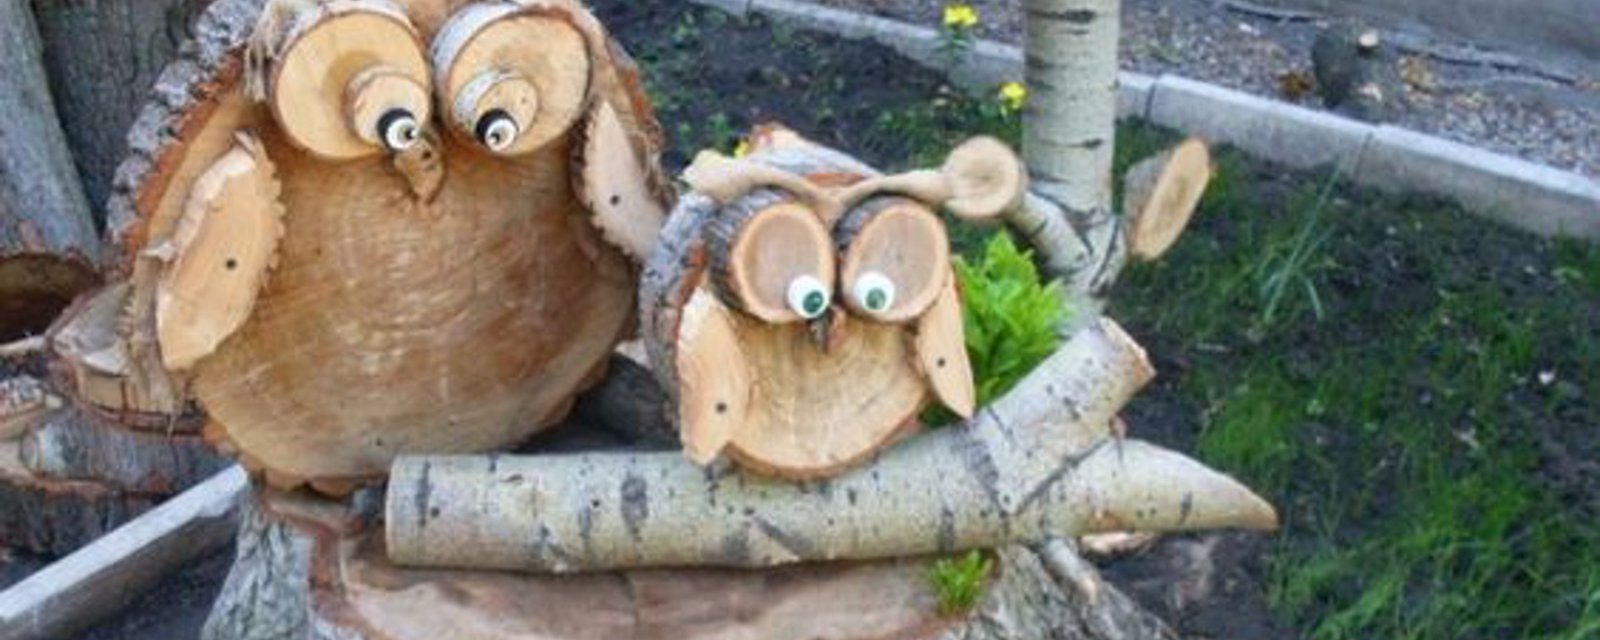 10 projets simples à faire avec du bois, parfaits pour les débutants